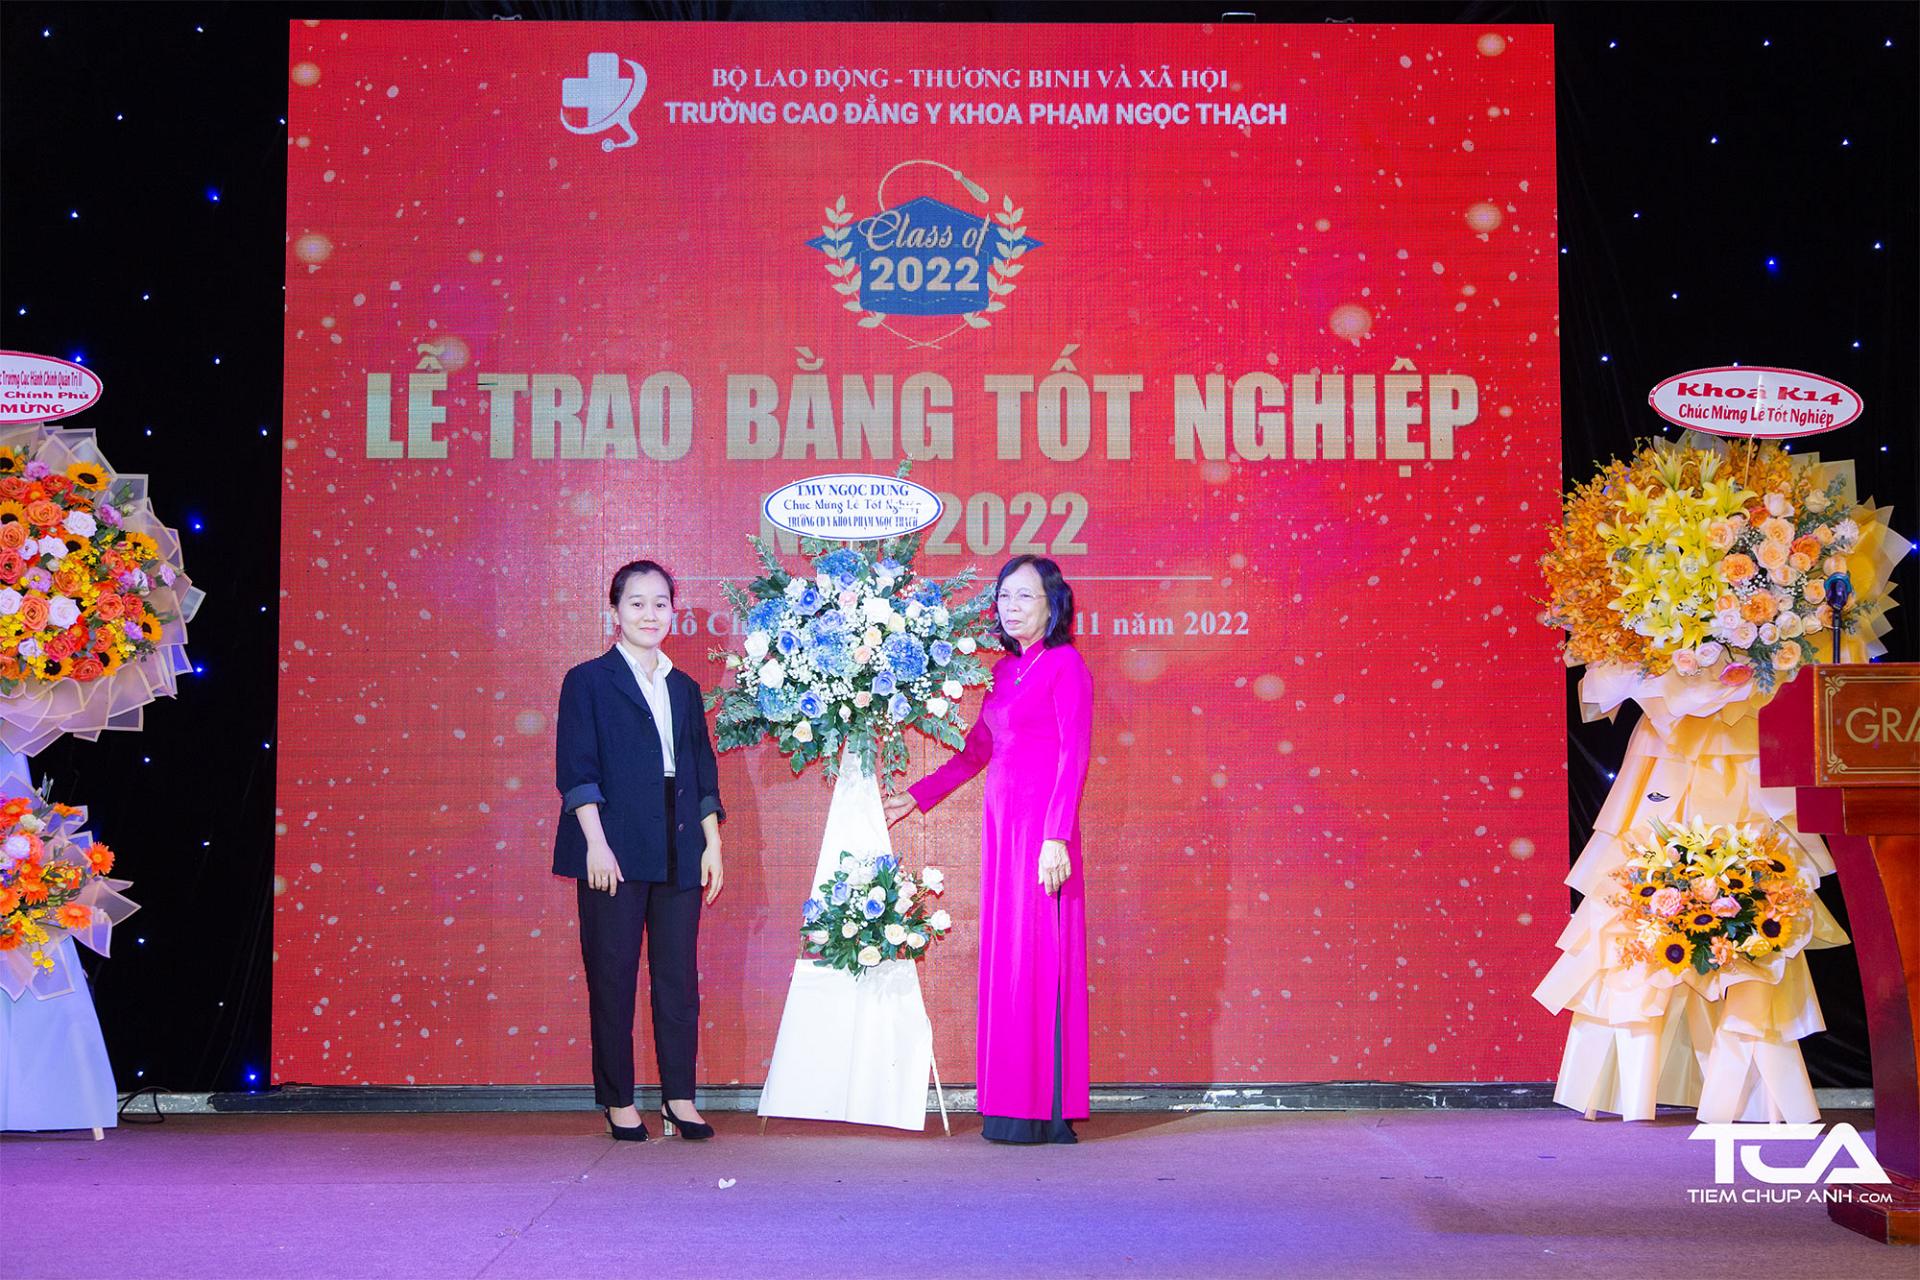 Thẩm mỹ viện Ngọc Dung gửi hoa chúc mừng Trường Cao đẳng y khoa Phạm Ngọc Thạch